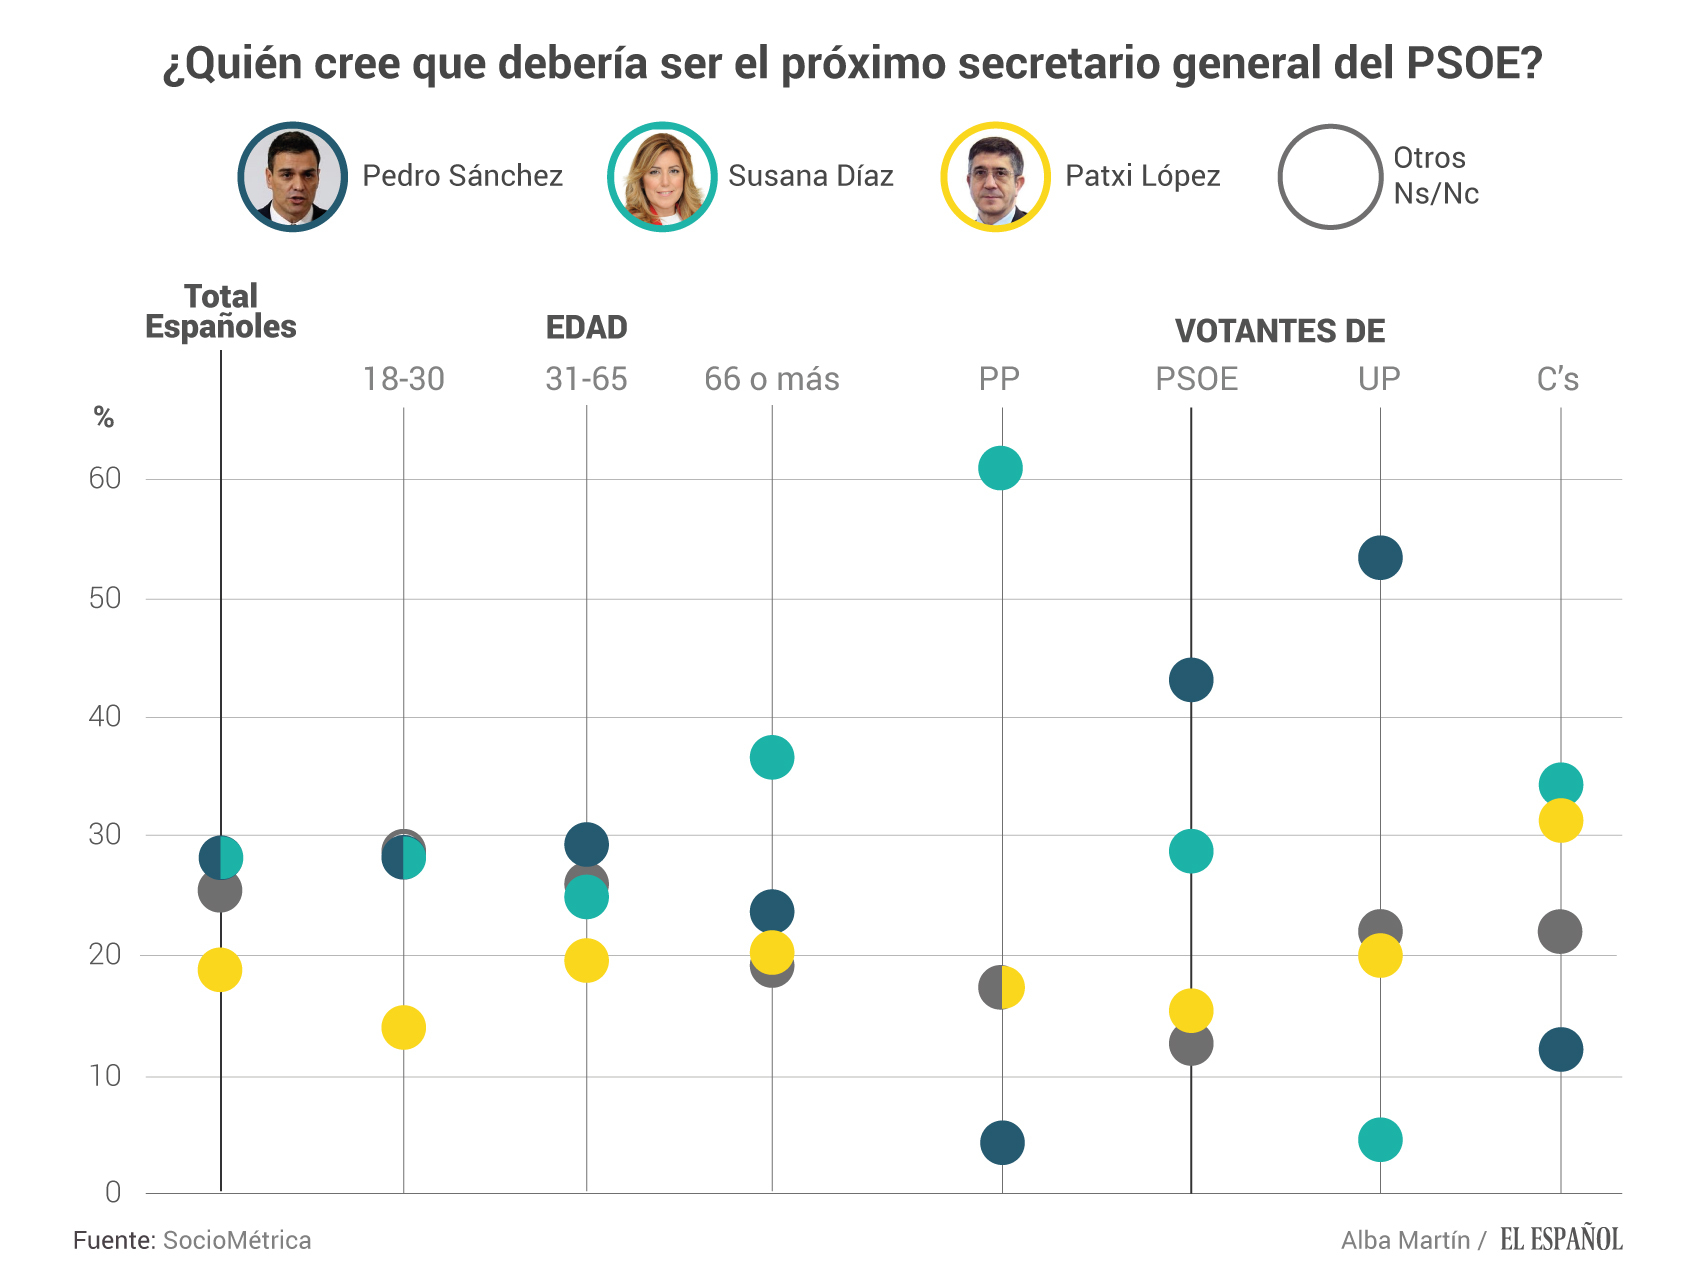 ¿Quién debería ser el secretario general del PSOE?